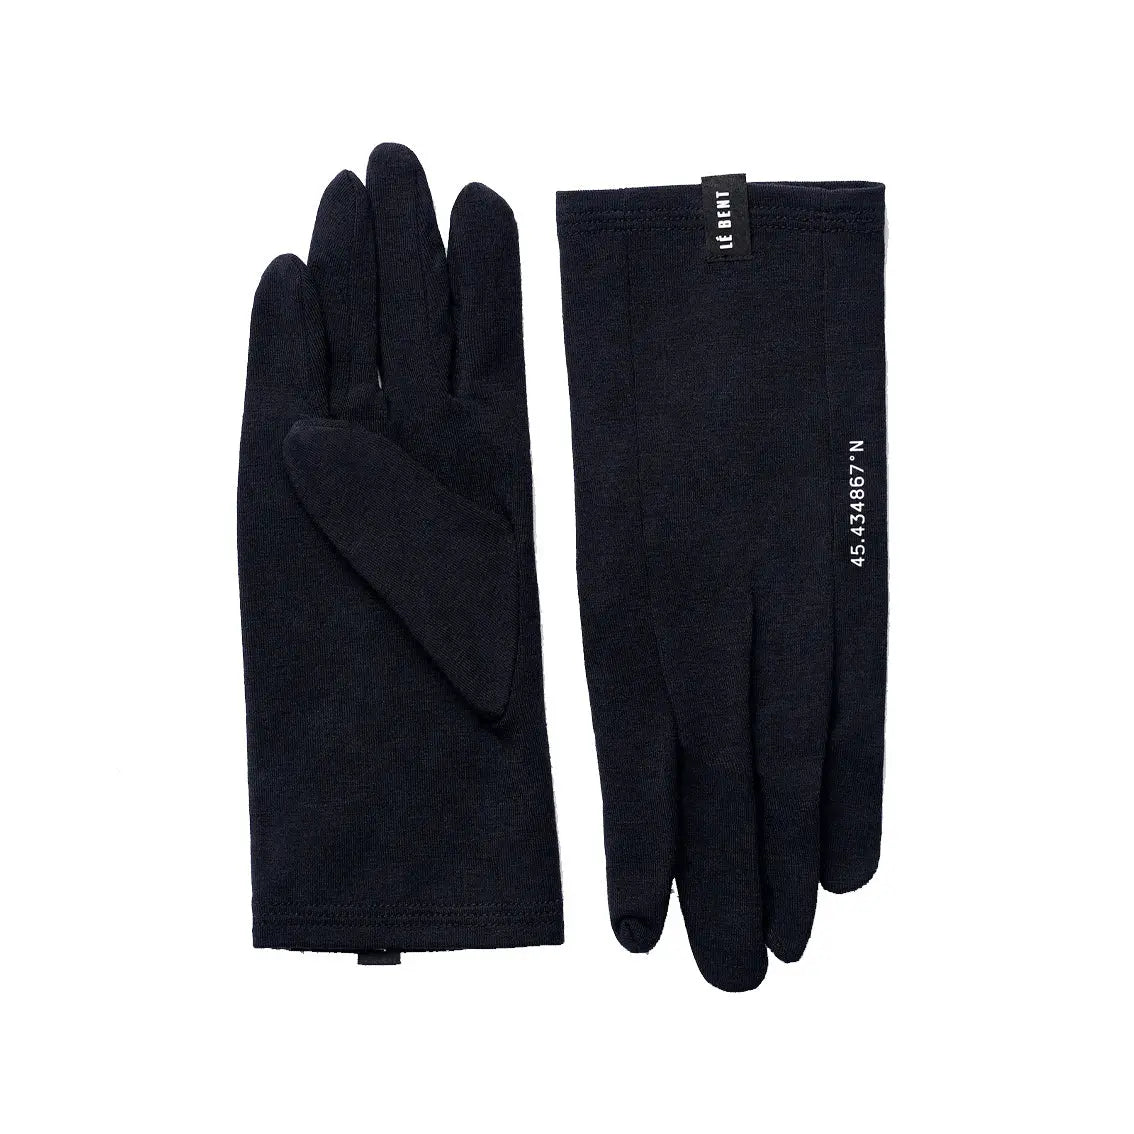 Le Bent Core Glove Liner 260 - Black